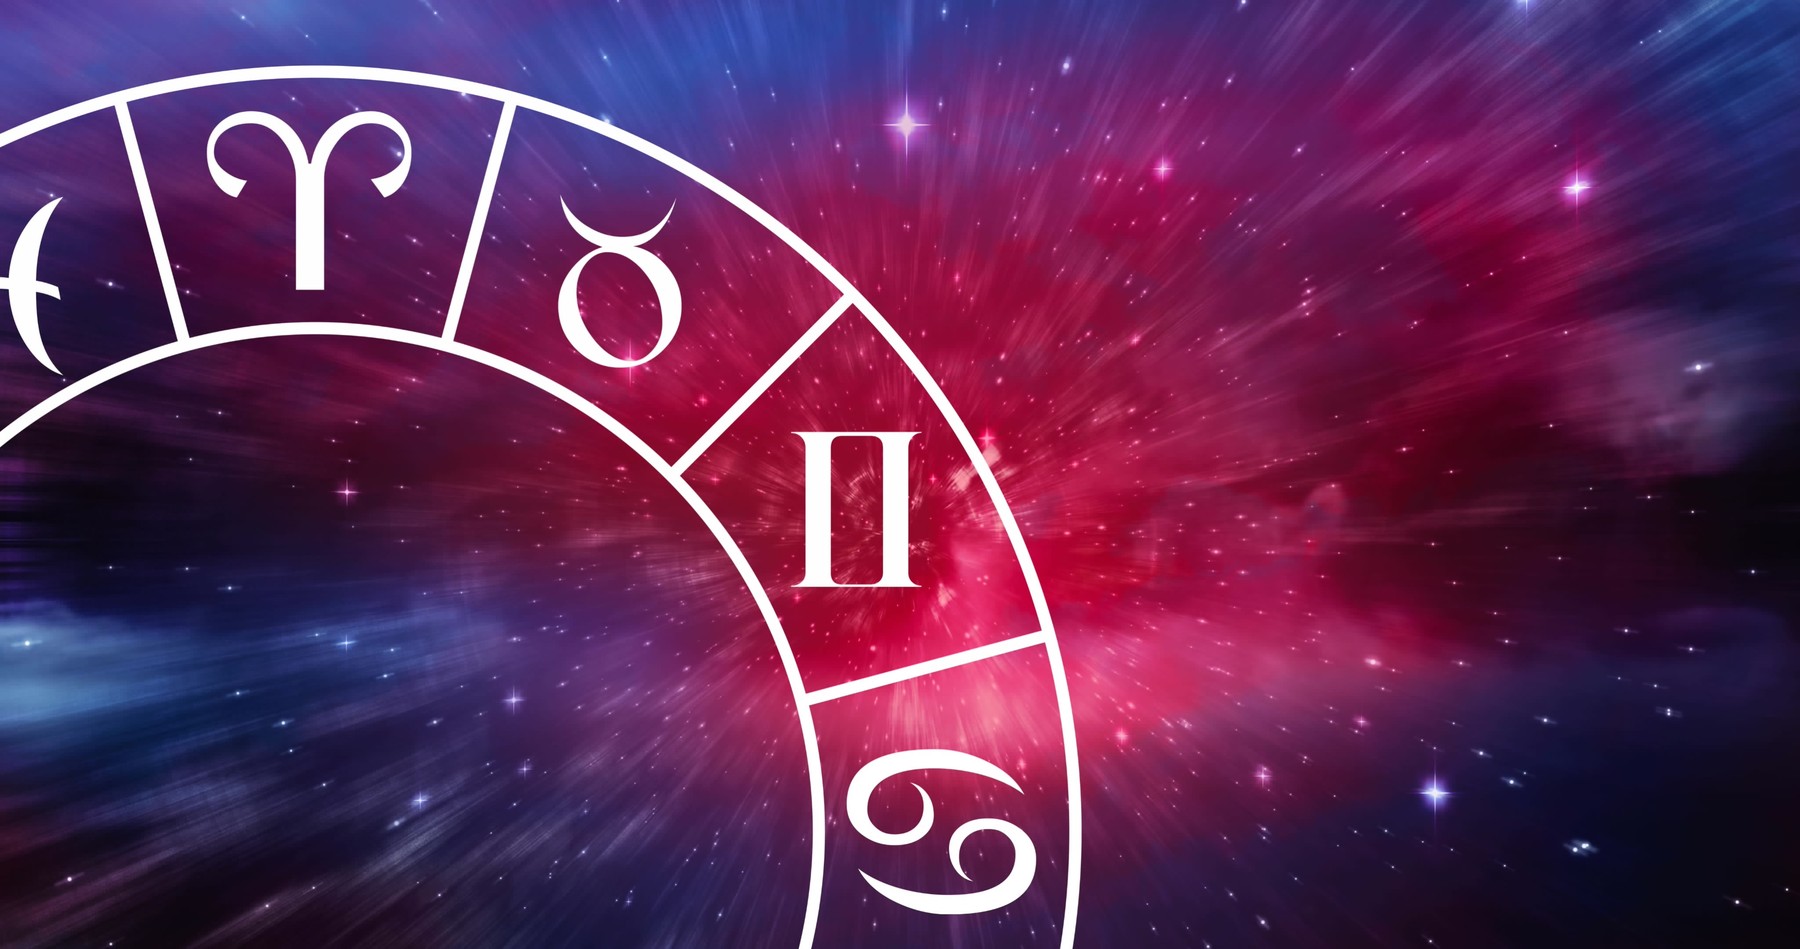 Napi horoszkóp - május 8: fordulat jöhet az életedben, most merj nagyot álmodni